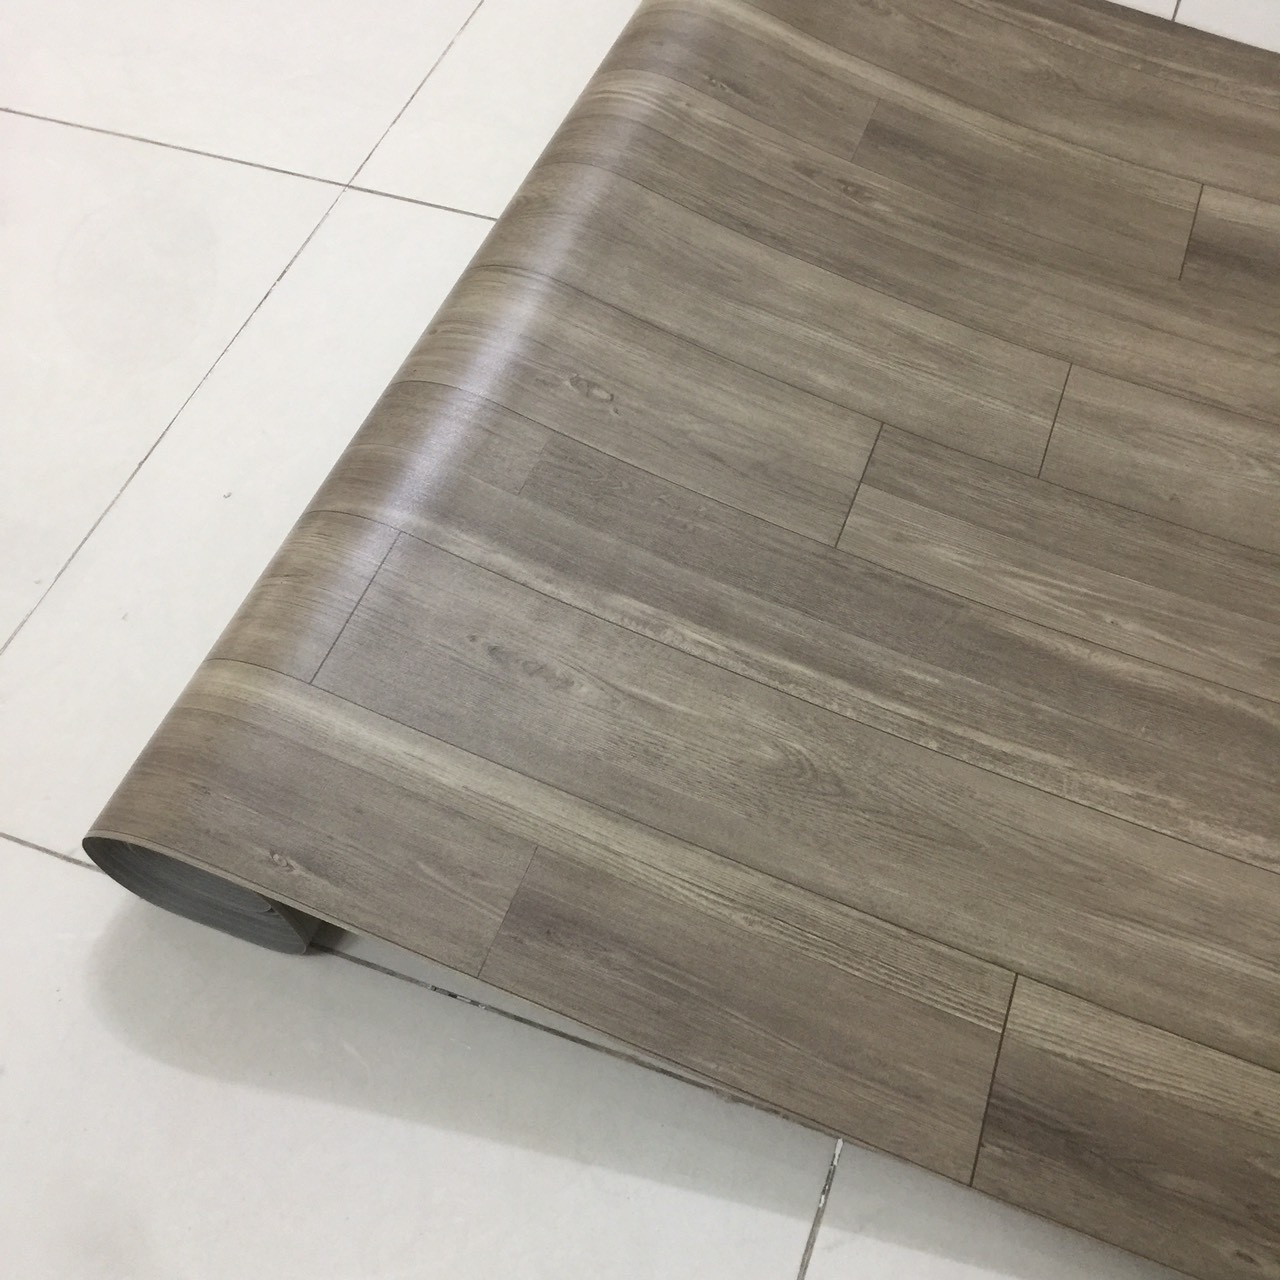 thảm nhựa simili trải sàn vân gỗ xám - bề mặt nhám hiện rõ vân gỗ - 1 mét vuông